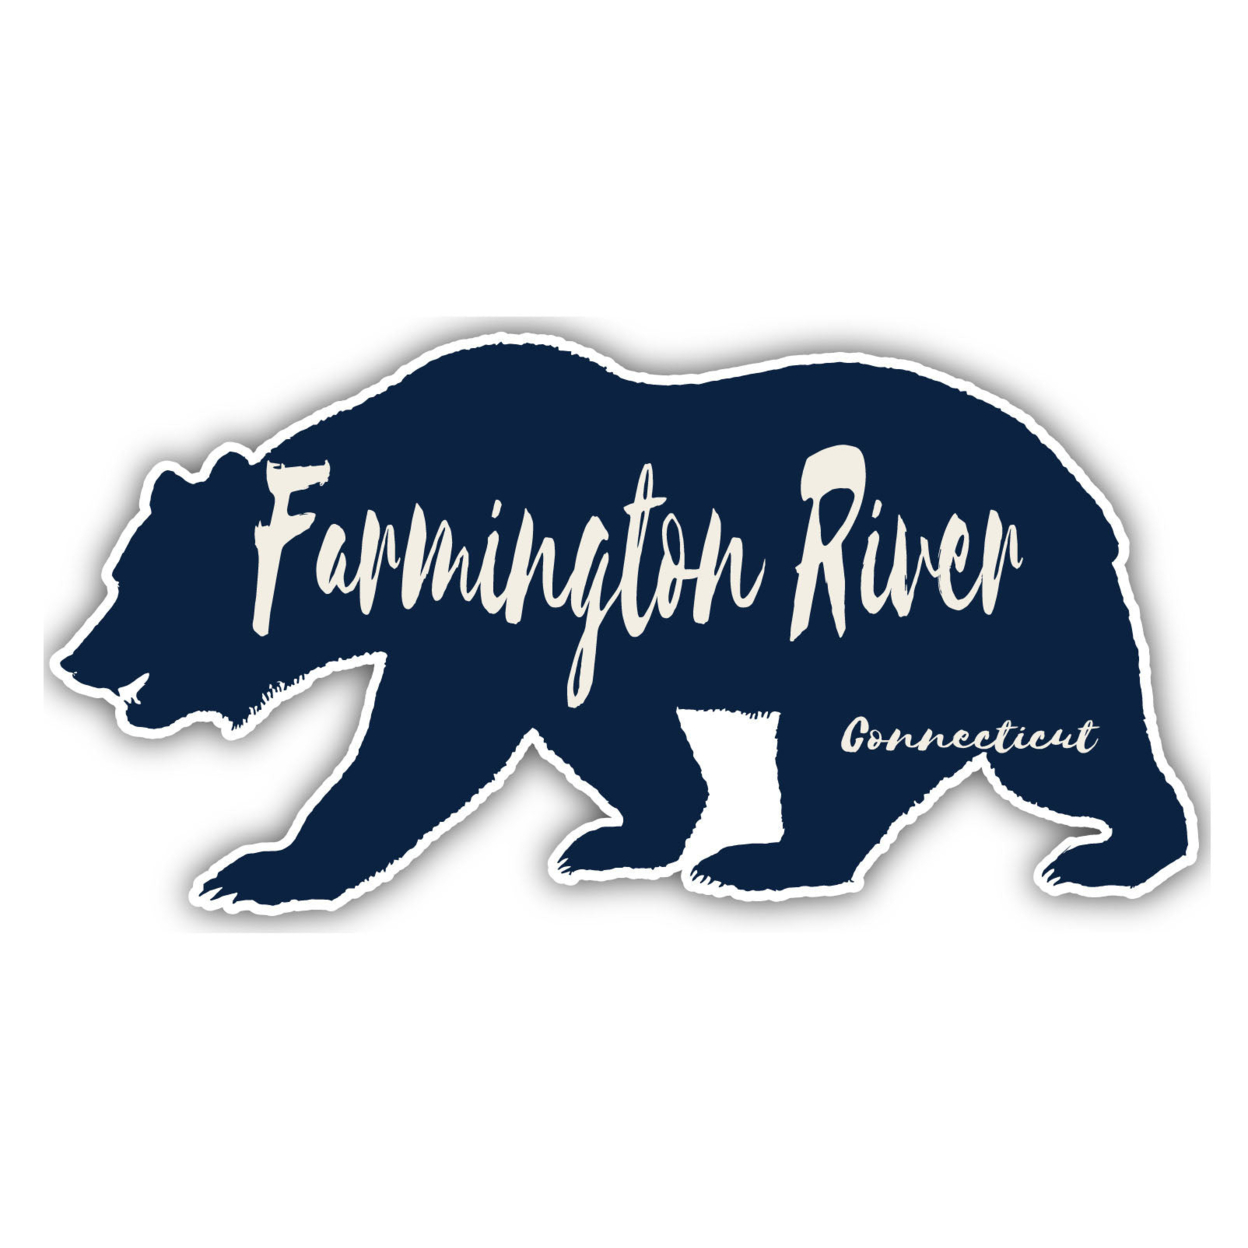 Farmington River Connecticut Souvenir Decorative Stickers (Choose Theme And Size) - 4-Pack, 4-Inch, Bear